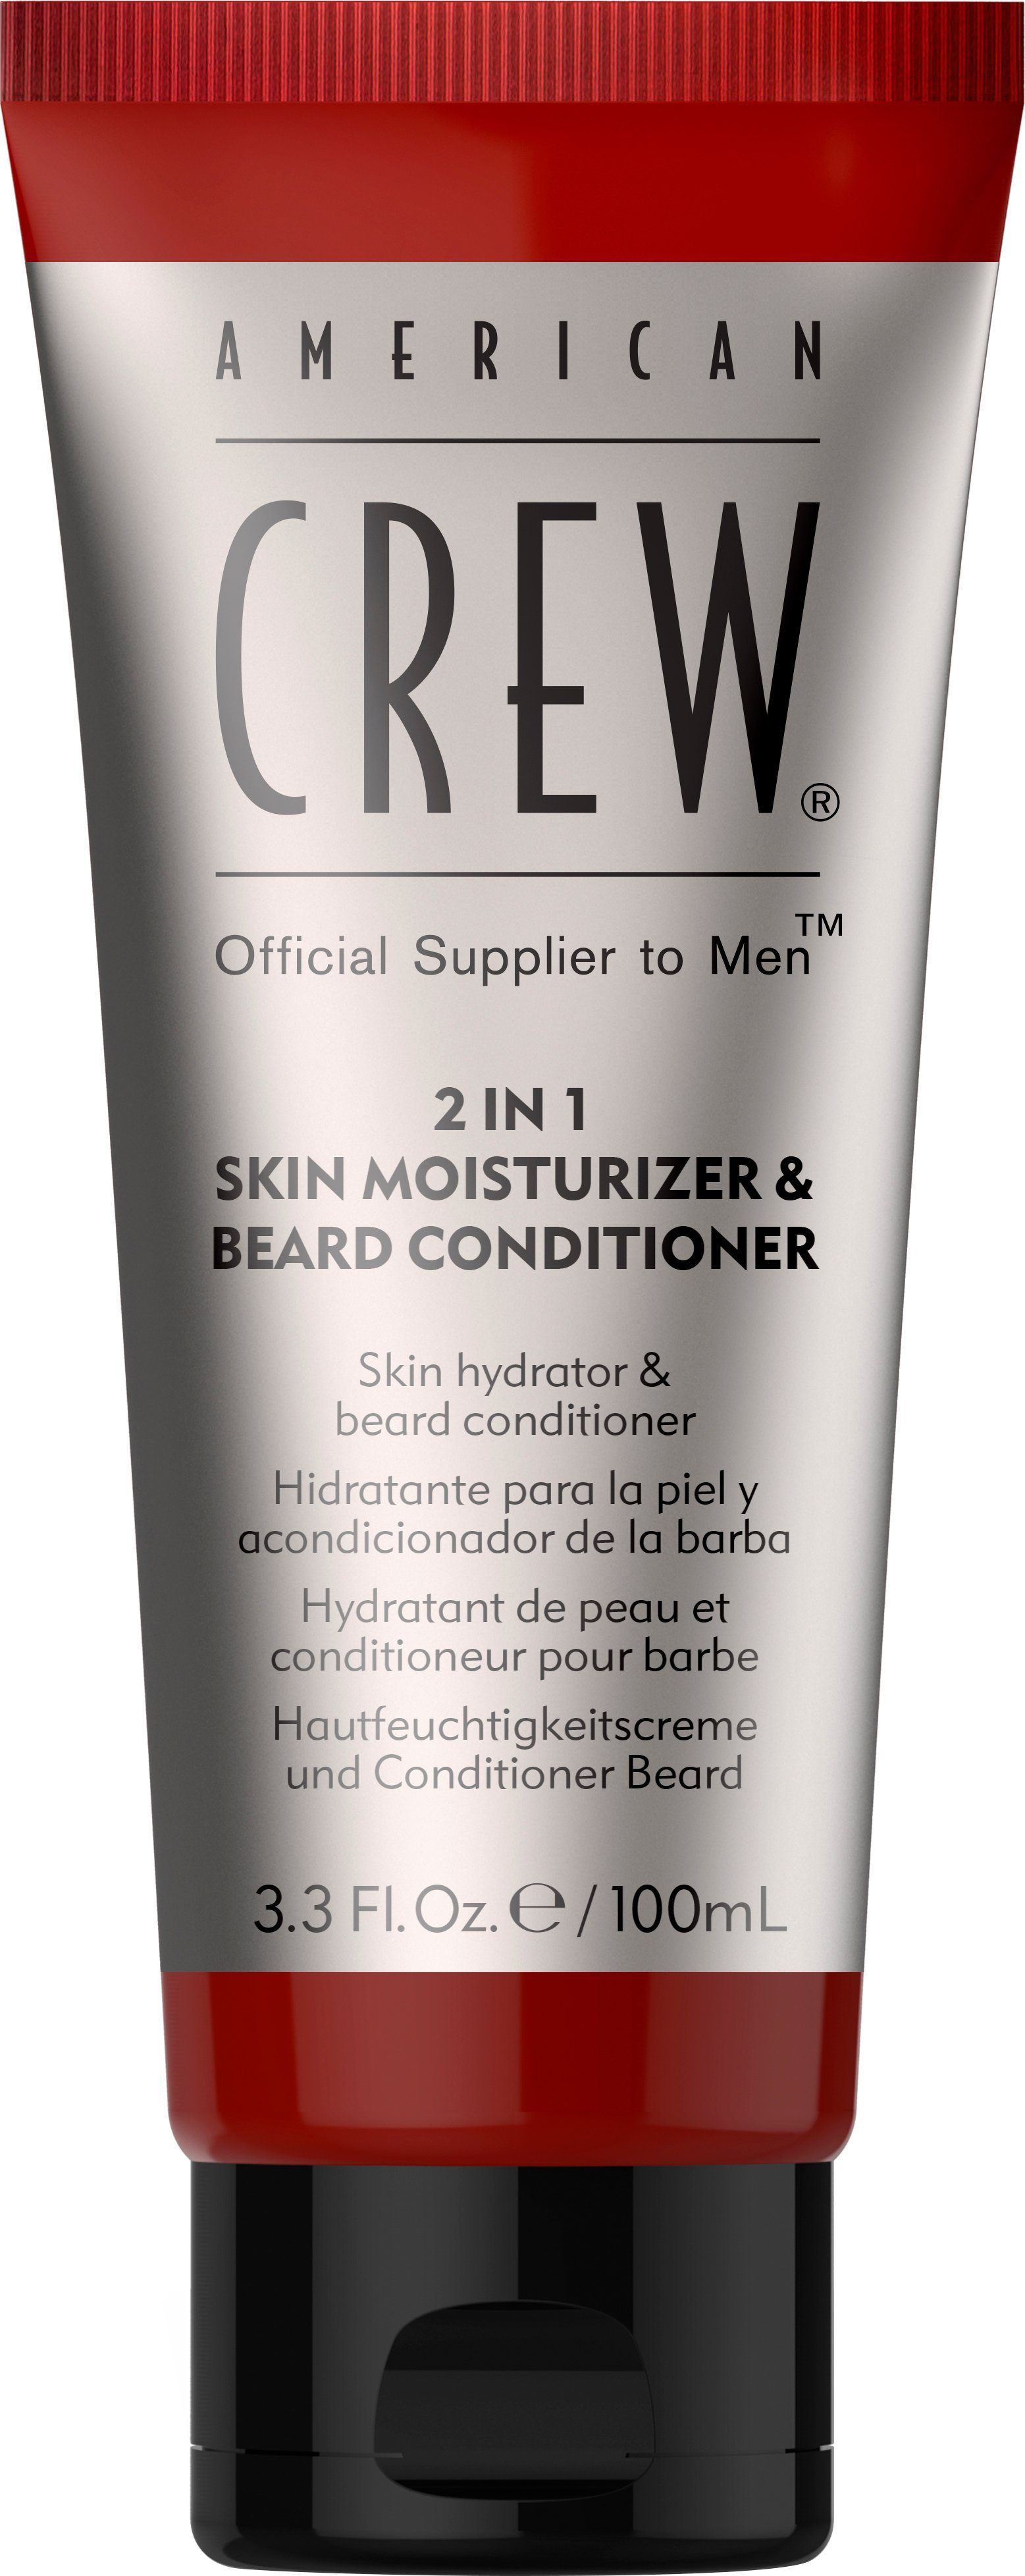 & Crew Conditioner 2In1 American 100 Moisturizer Bartconditioner Skin ml Beard